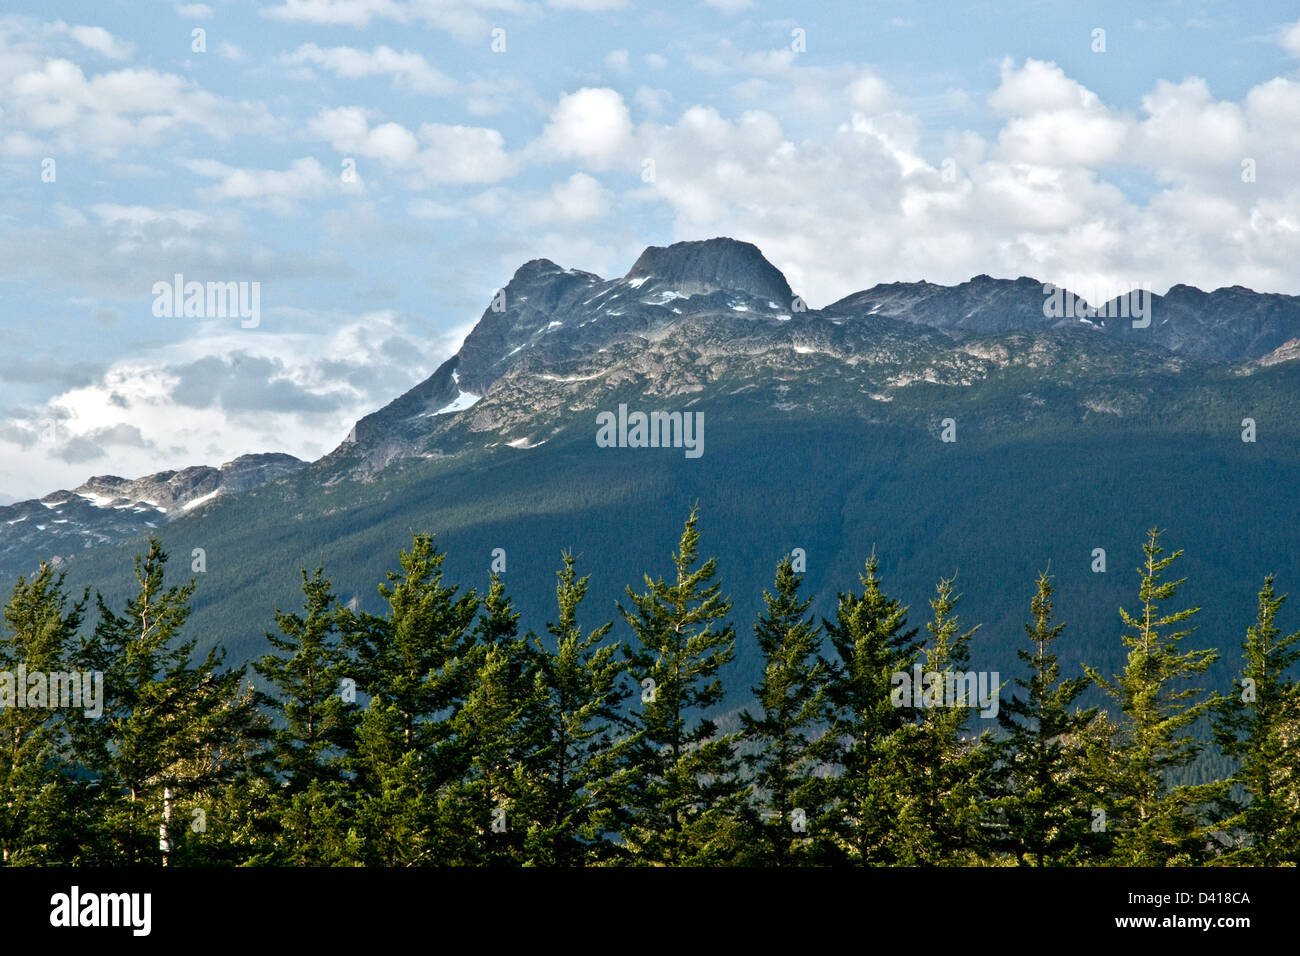 Une vue de Hagens Peak, dans la chaîne Côtière, vu de la vallée Bella Coola, près de Hagensborg, British Columbia, Canada. Banque D'Images